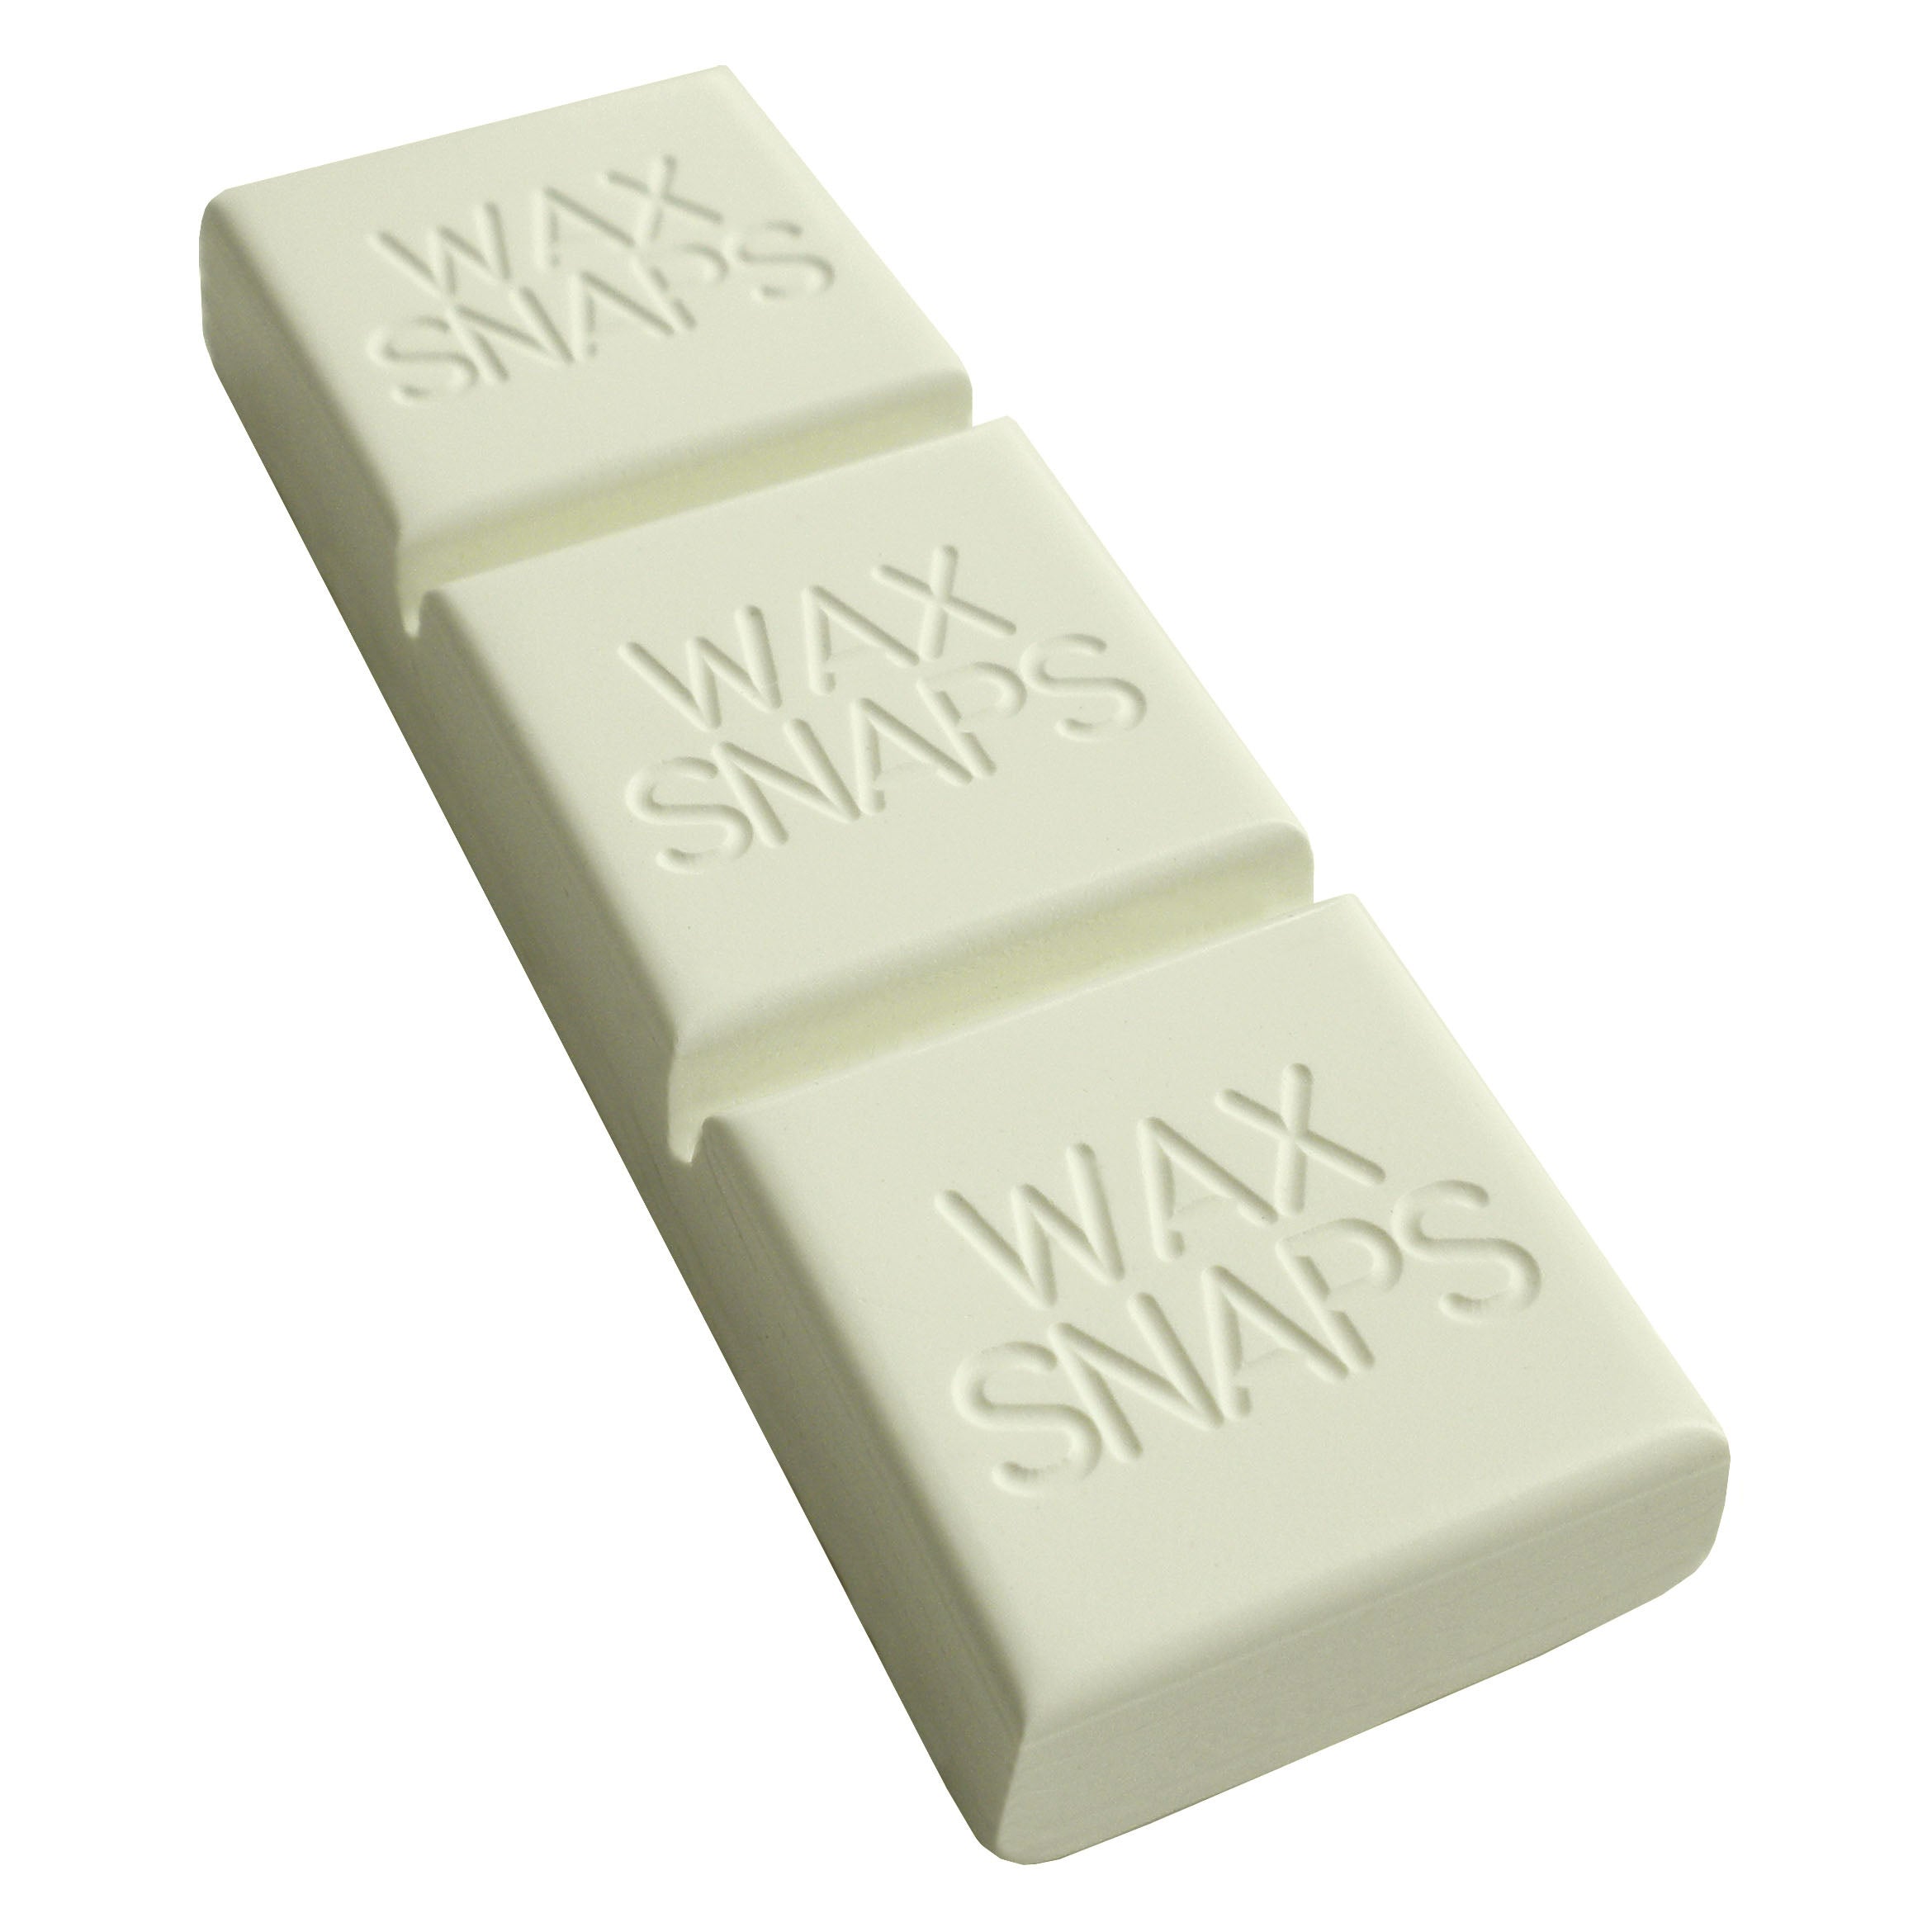 Zinc White Wax Snaps